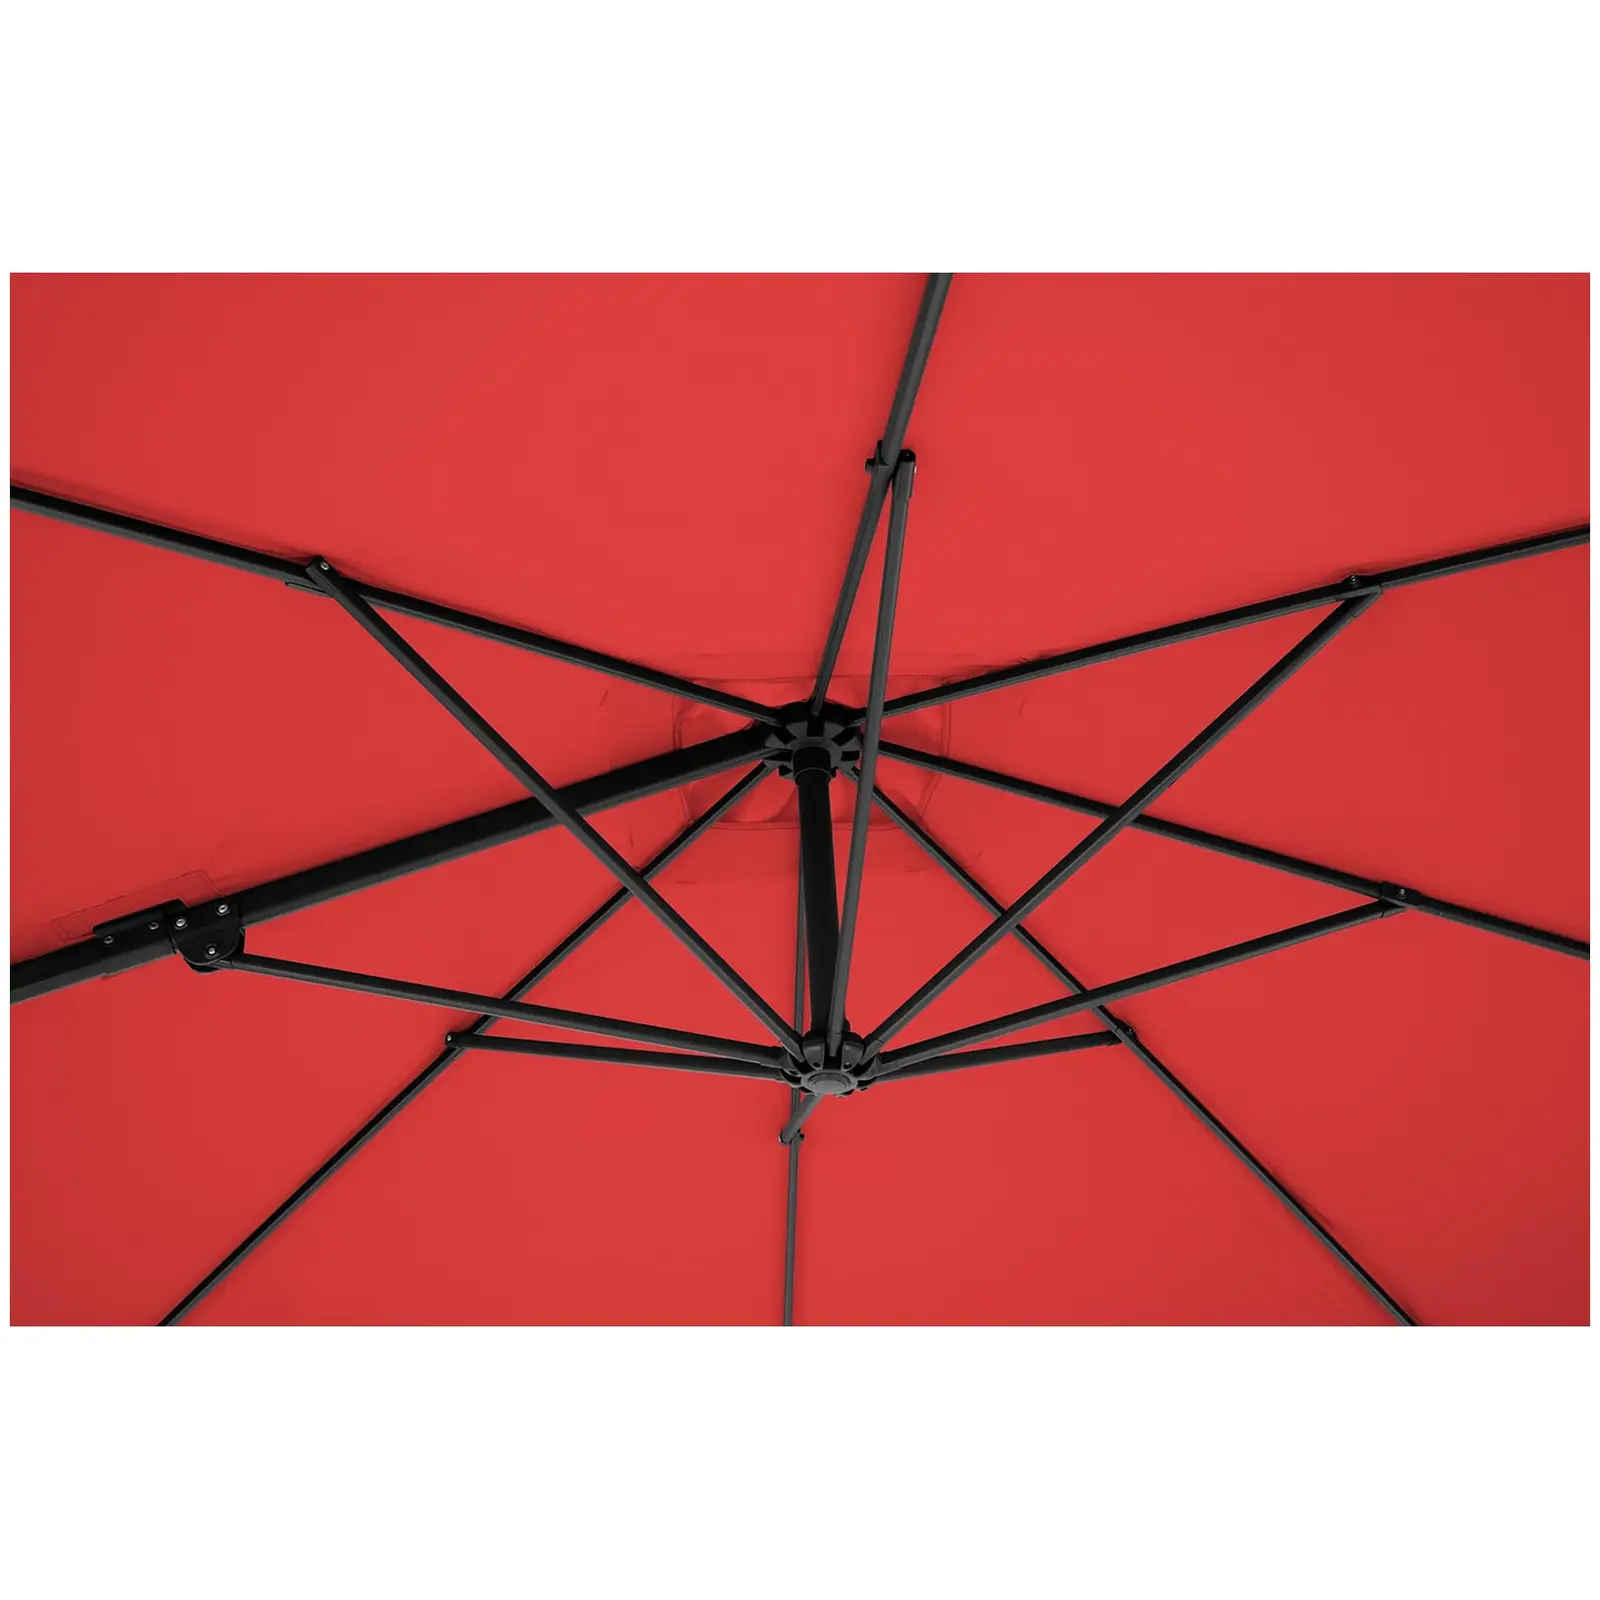 Ampelschirm - rot - viereckig - 250 x 250 cm - drehbar - 5